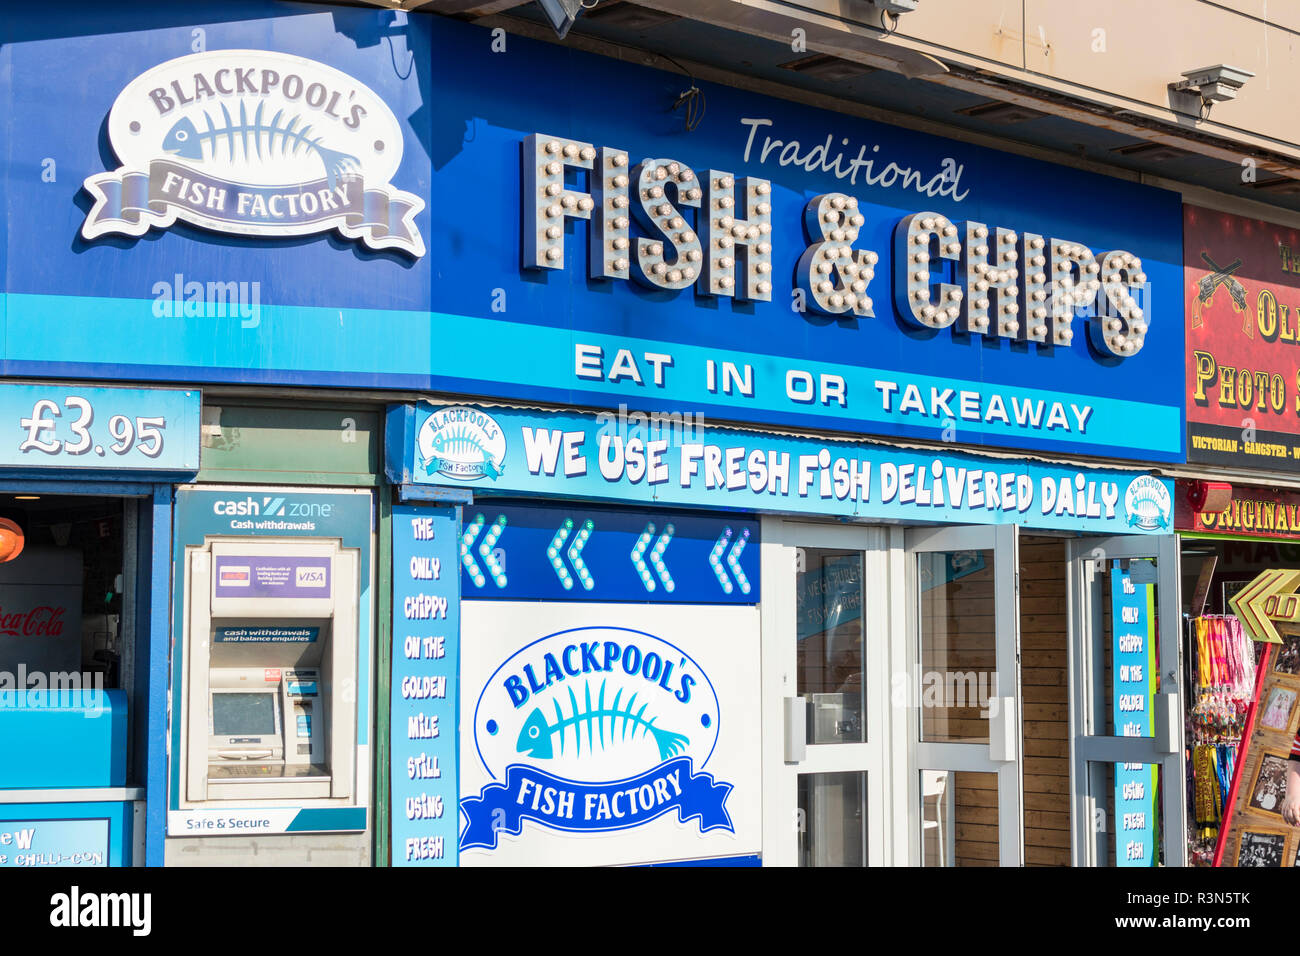 Die traditionelle Fish und Chips shop Blackpool Fischfabrik essen oder mitnehmen Fish & Chips Restaurant Promenade, Blackpool Lancashire England UK Europa Stockfoto